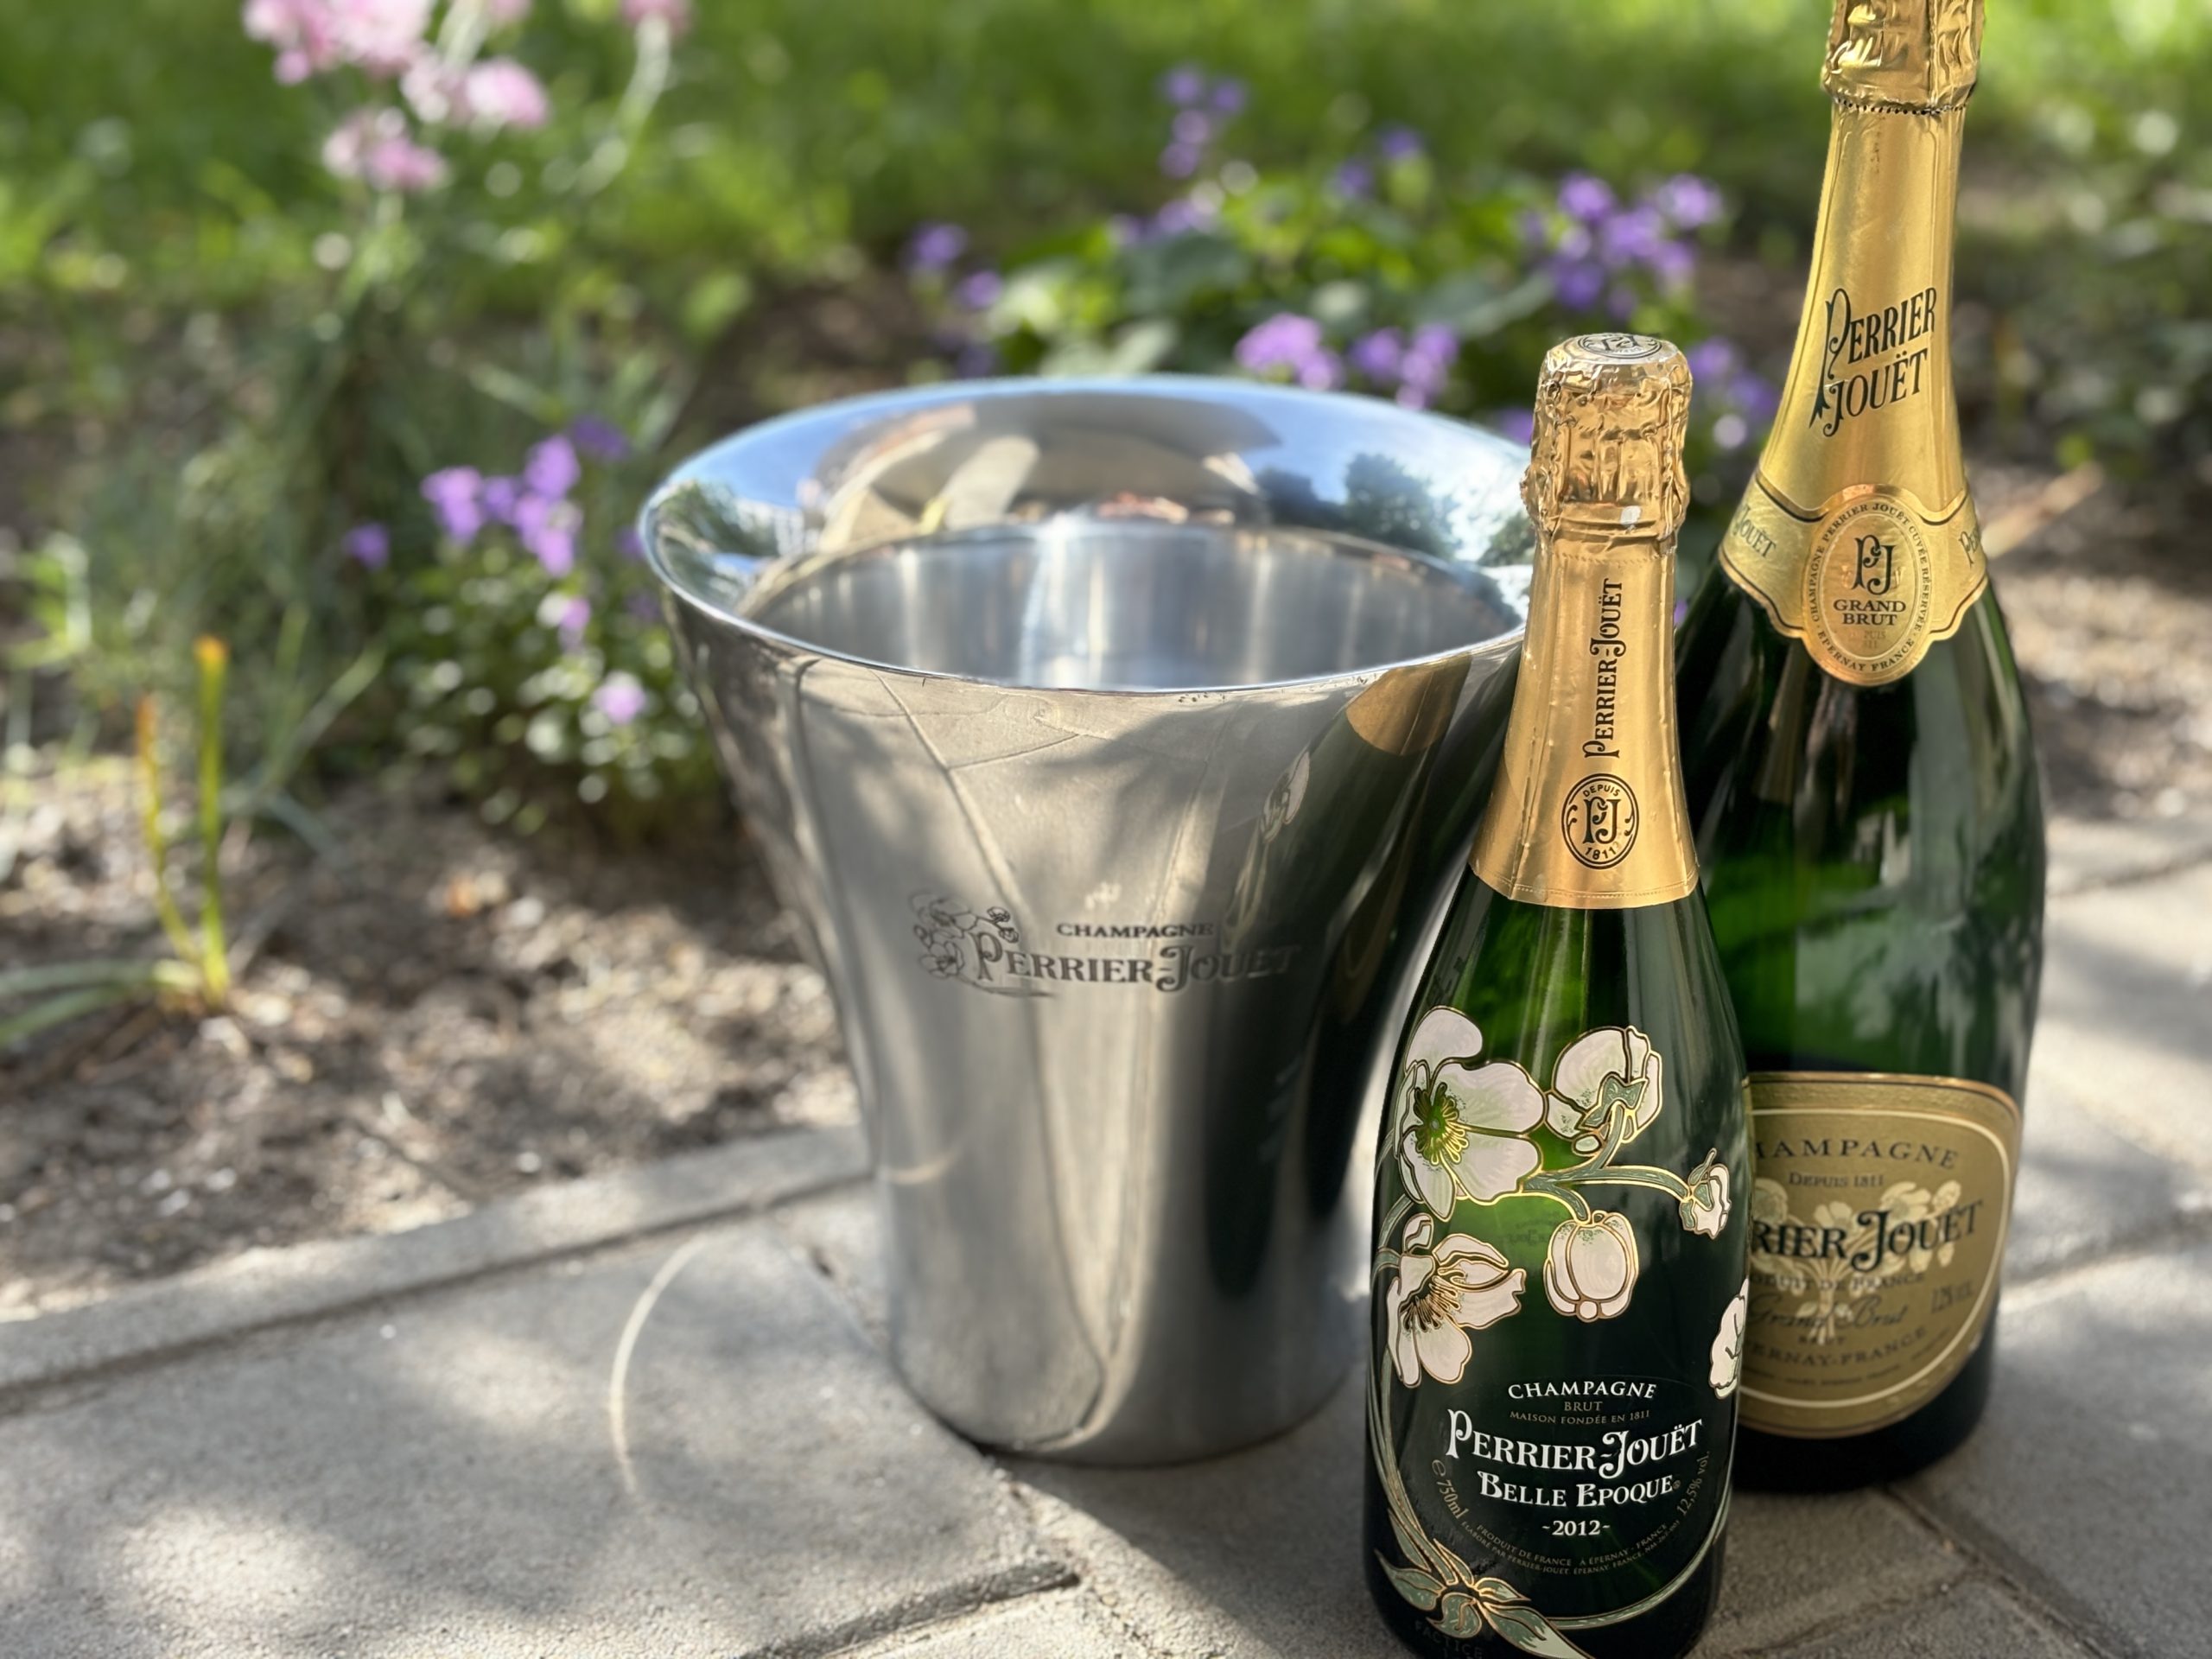 Perrier-Jouët Champagne ónöntvény pezsgős jégveder magnum palackokhoz tervezte Eric Berthes – 137.500.-Ft